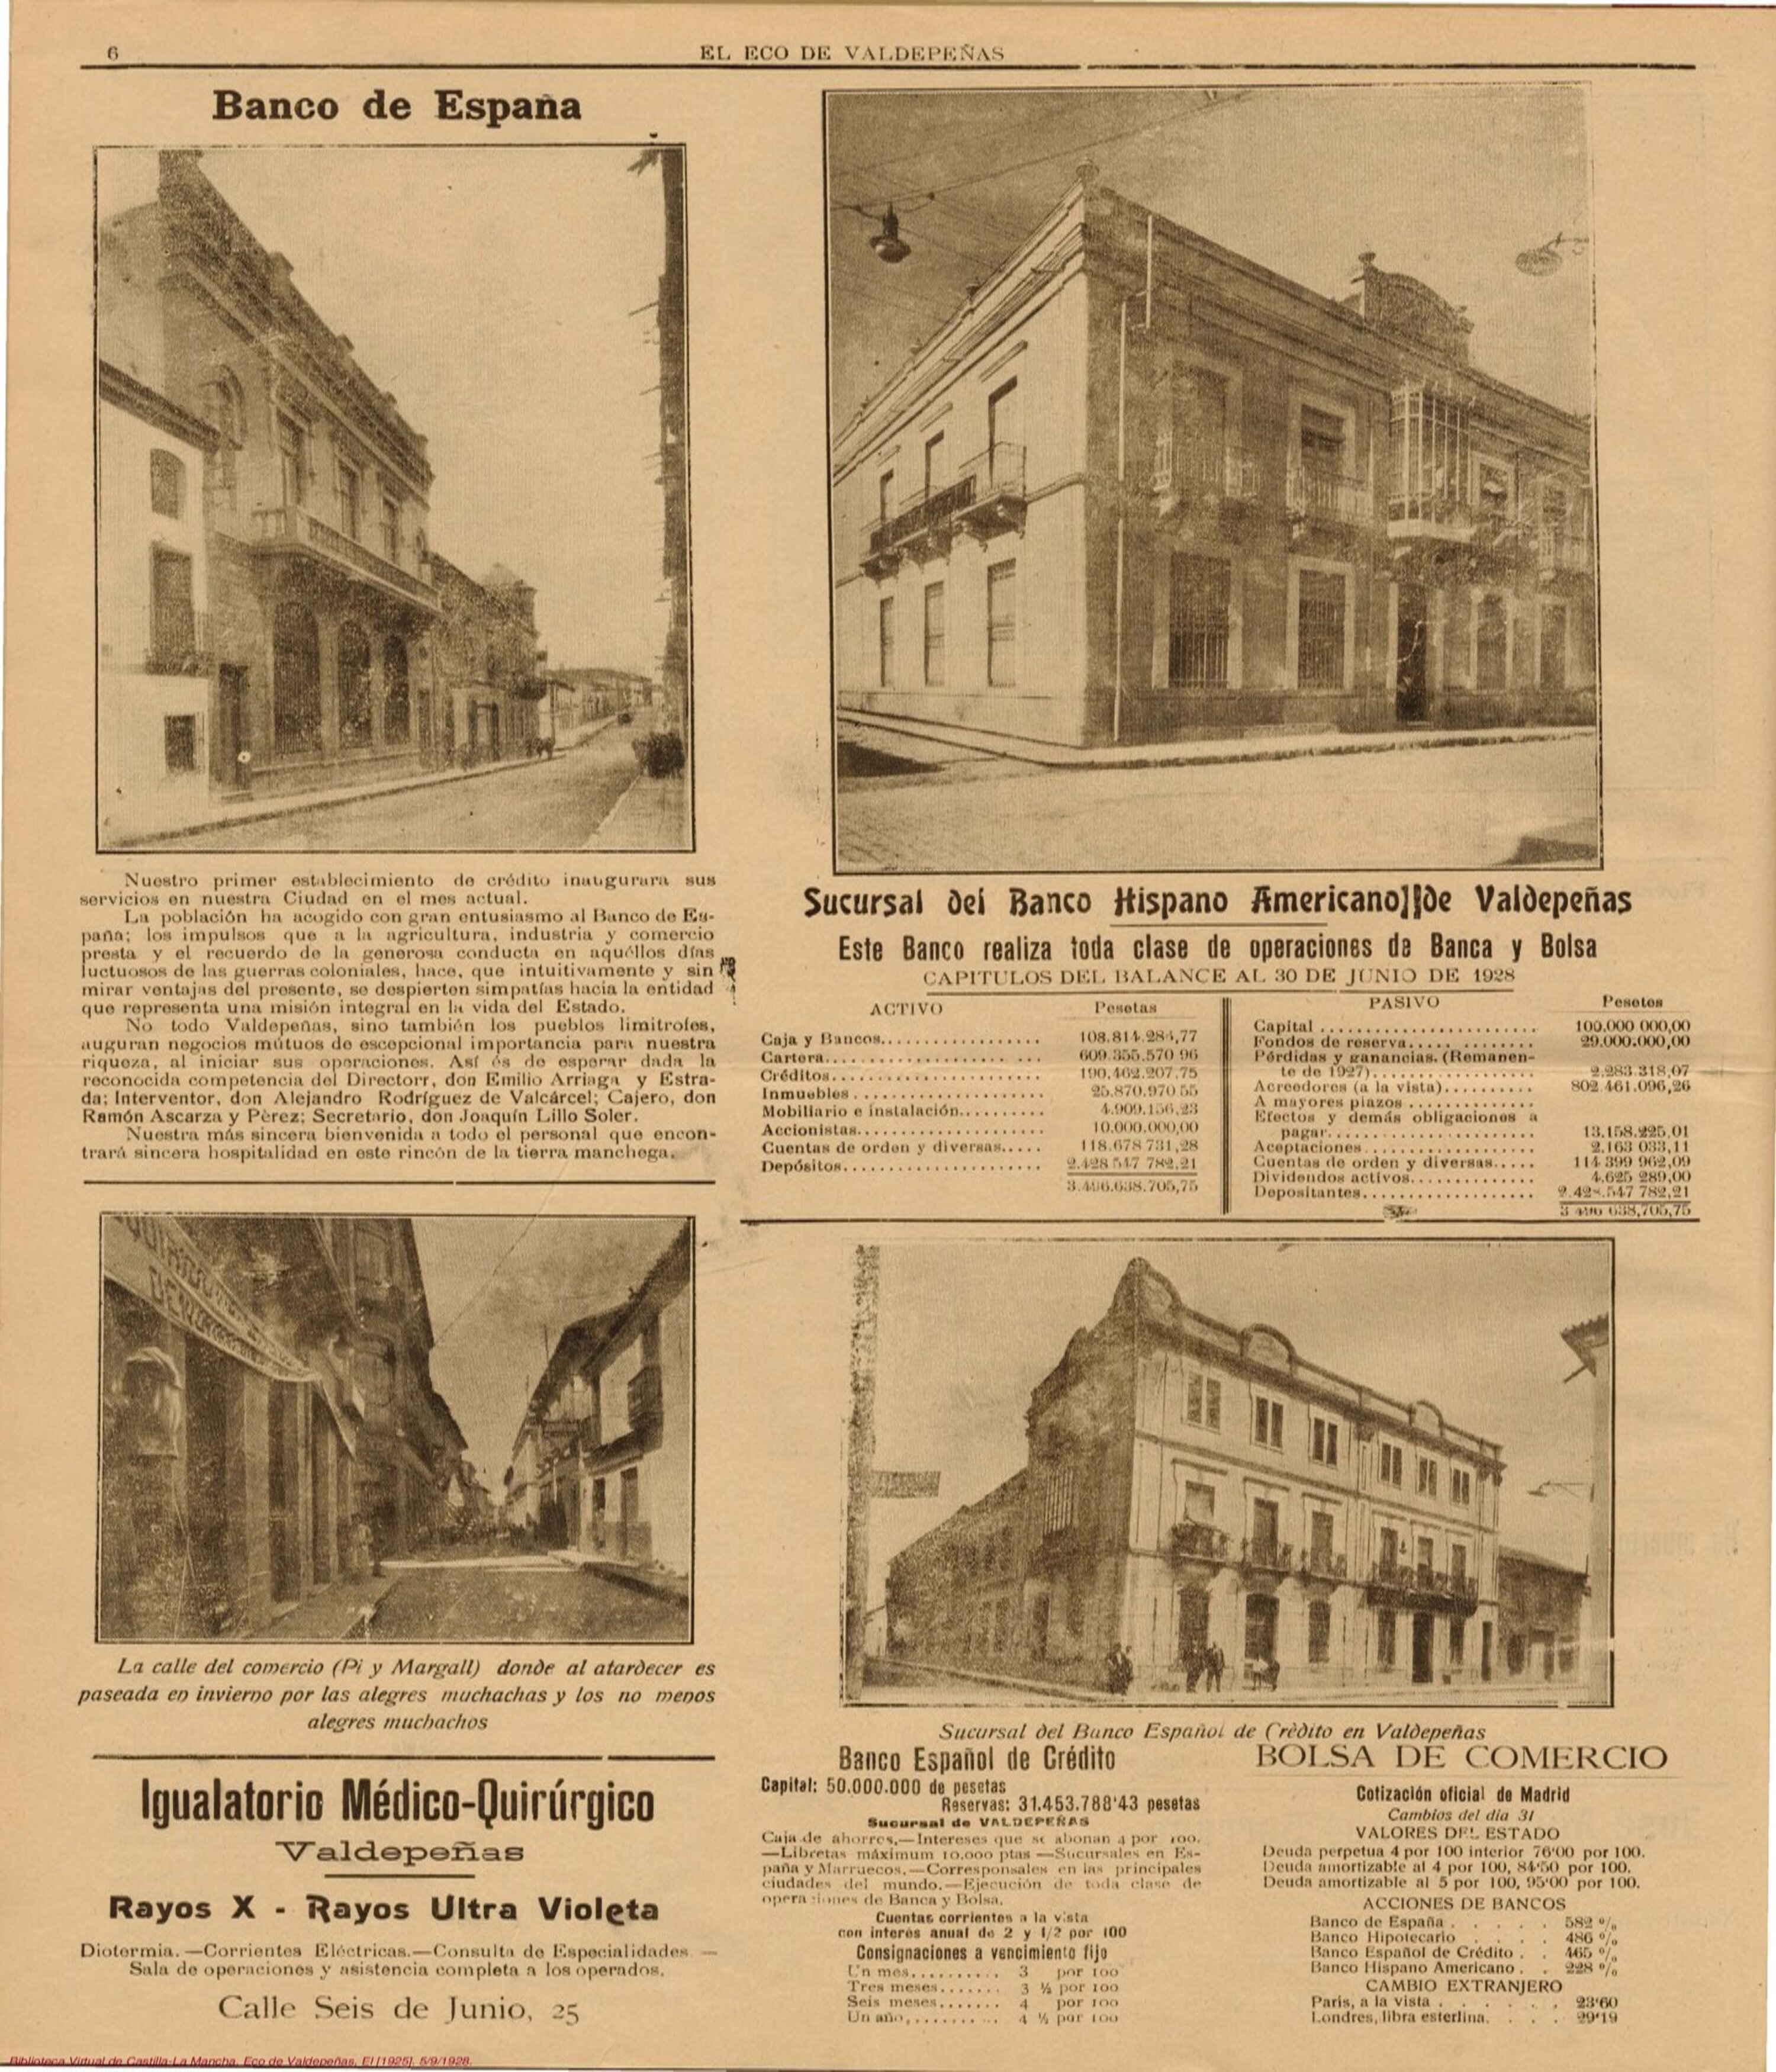  La banca de Valdepeñas en la prensa local del 5 de septiembre de 1928. Fuente: El Eco de Valdepeñas. Biblioteca Virtual de Castilla-La Mancha.